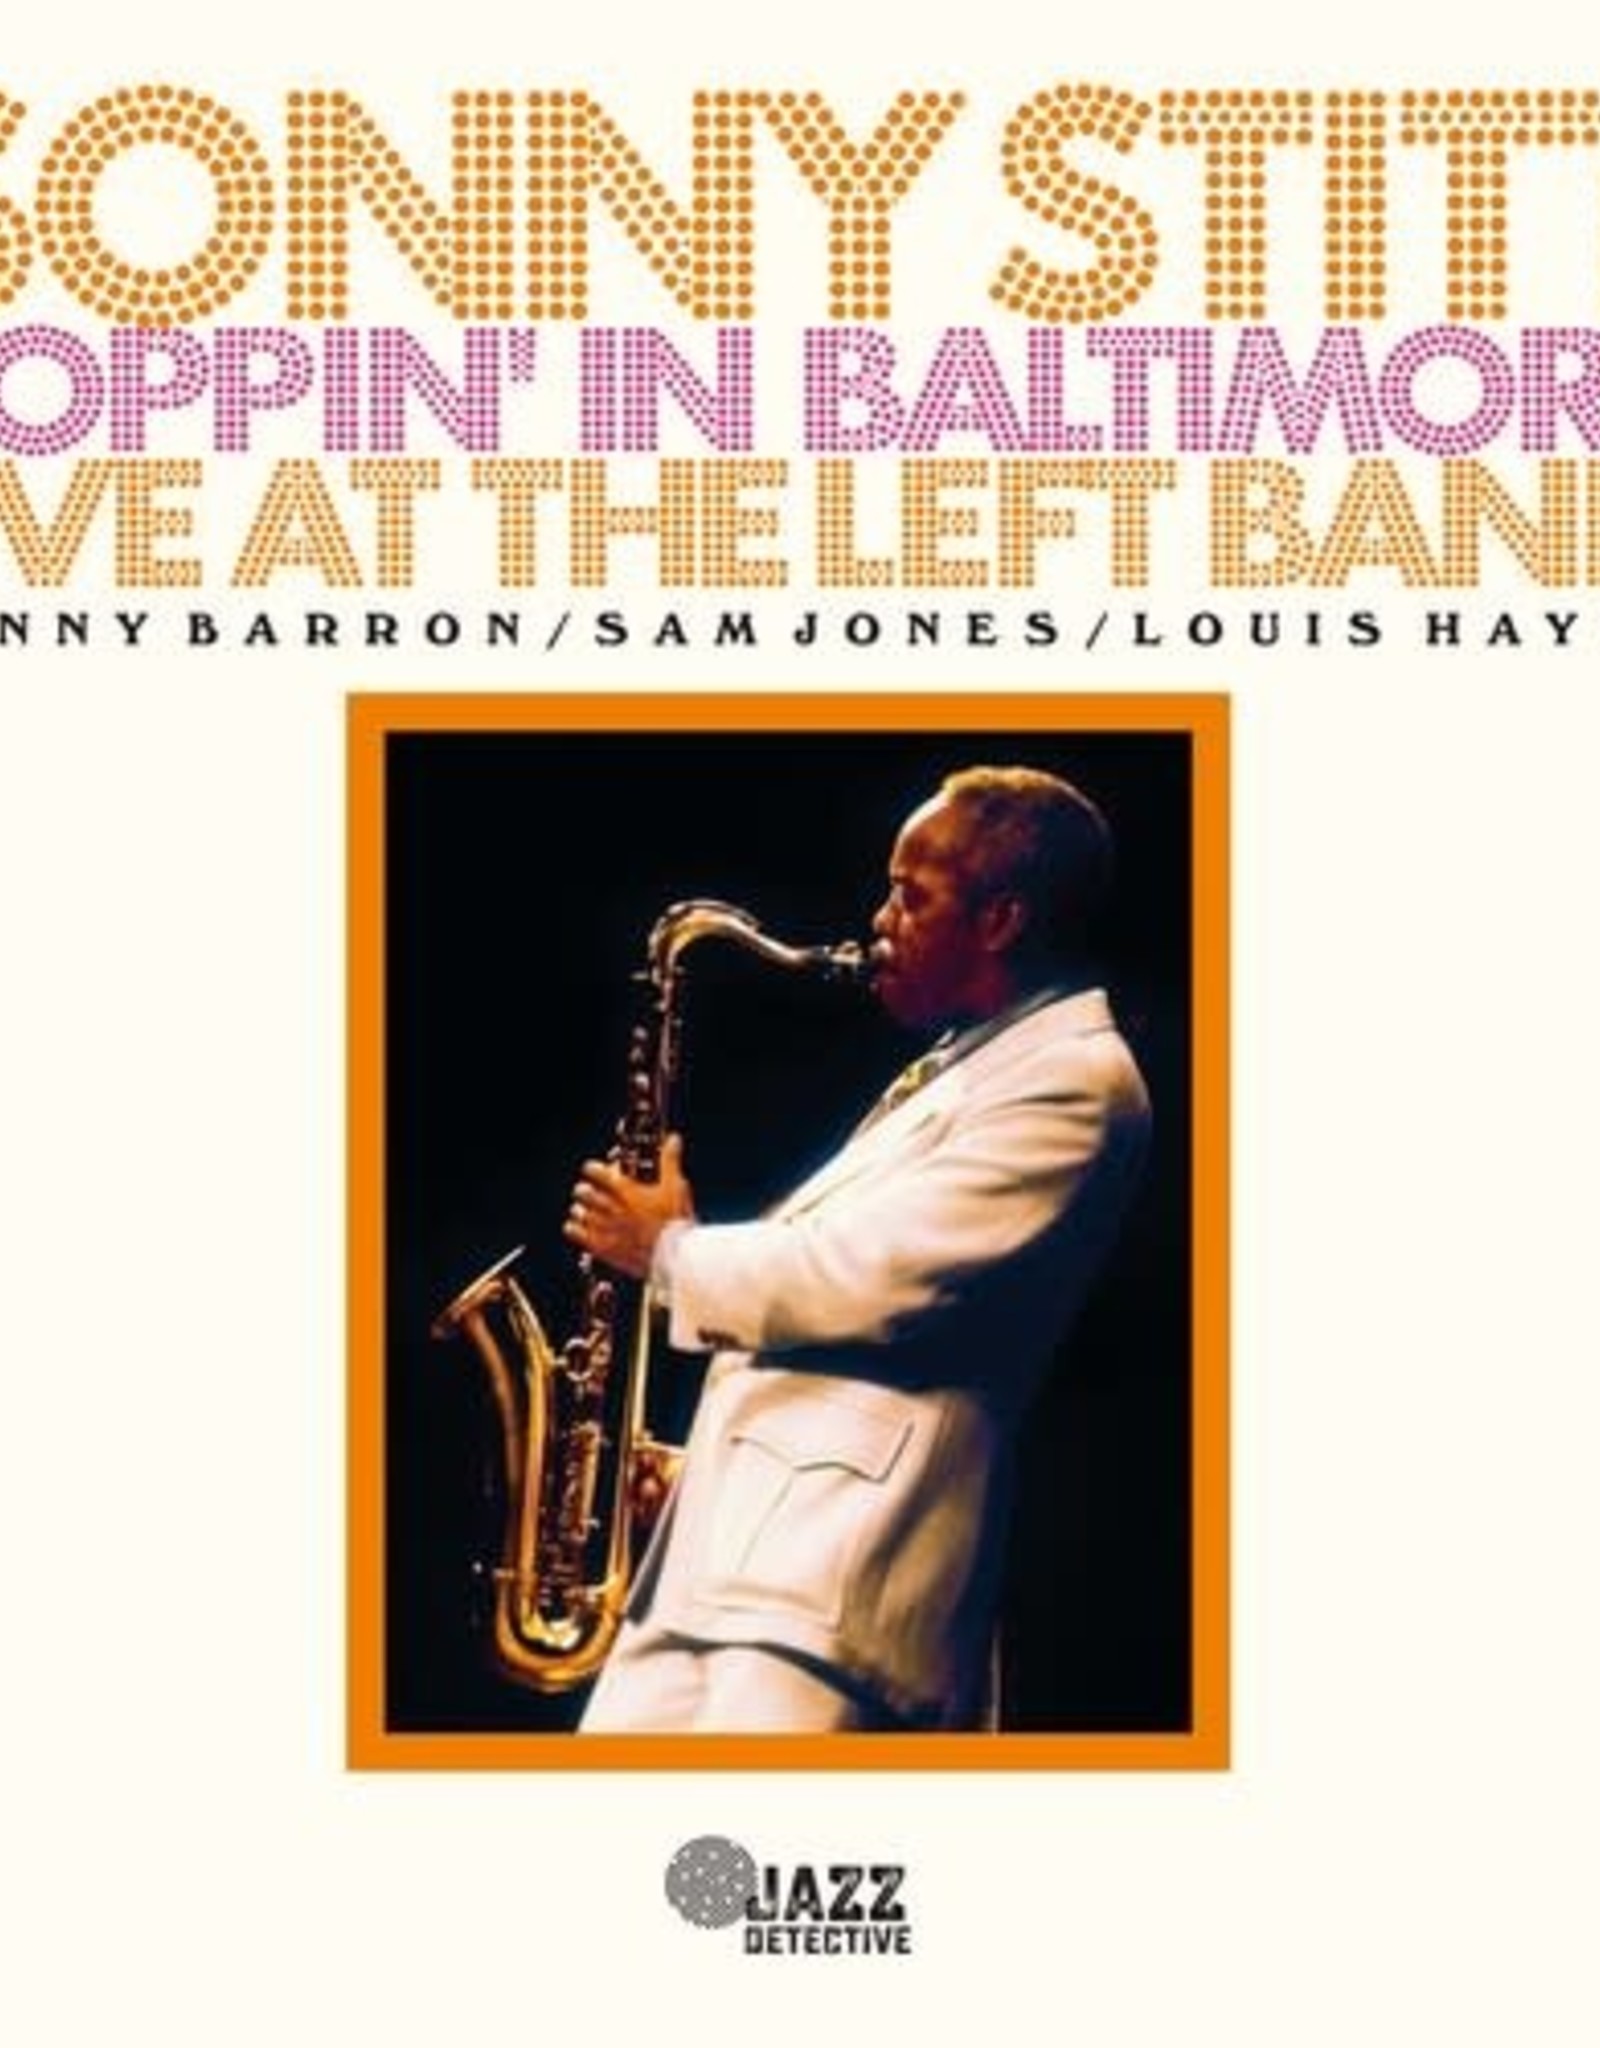 Sonny Stitt - Boppin' in Baltimore (RSD 2023)